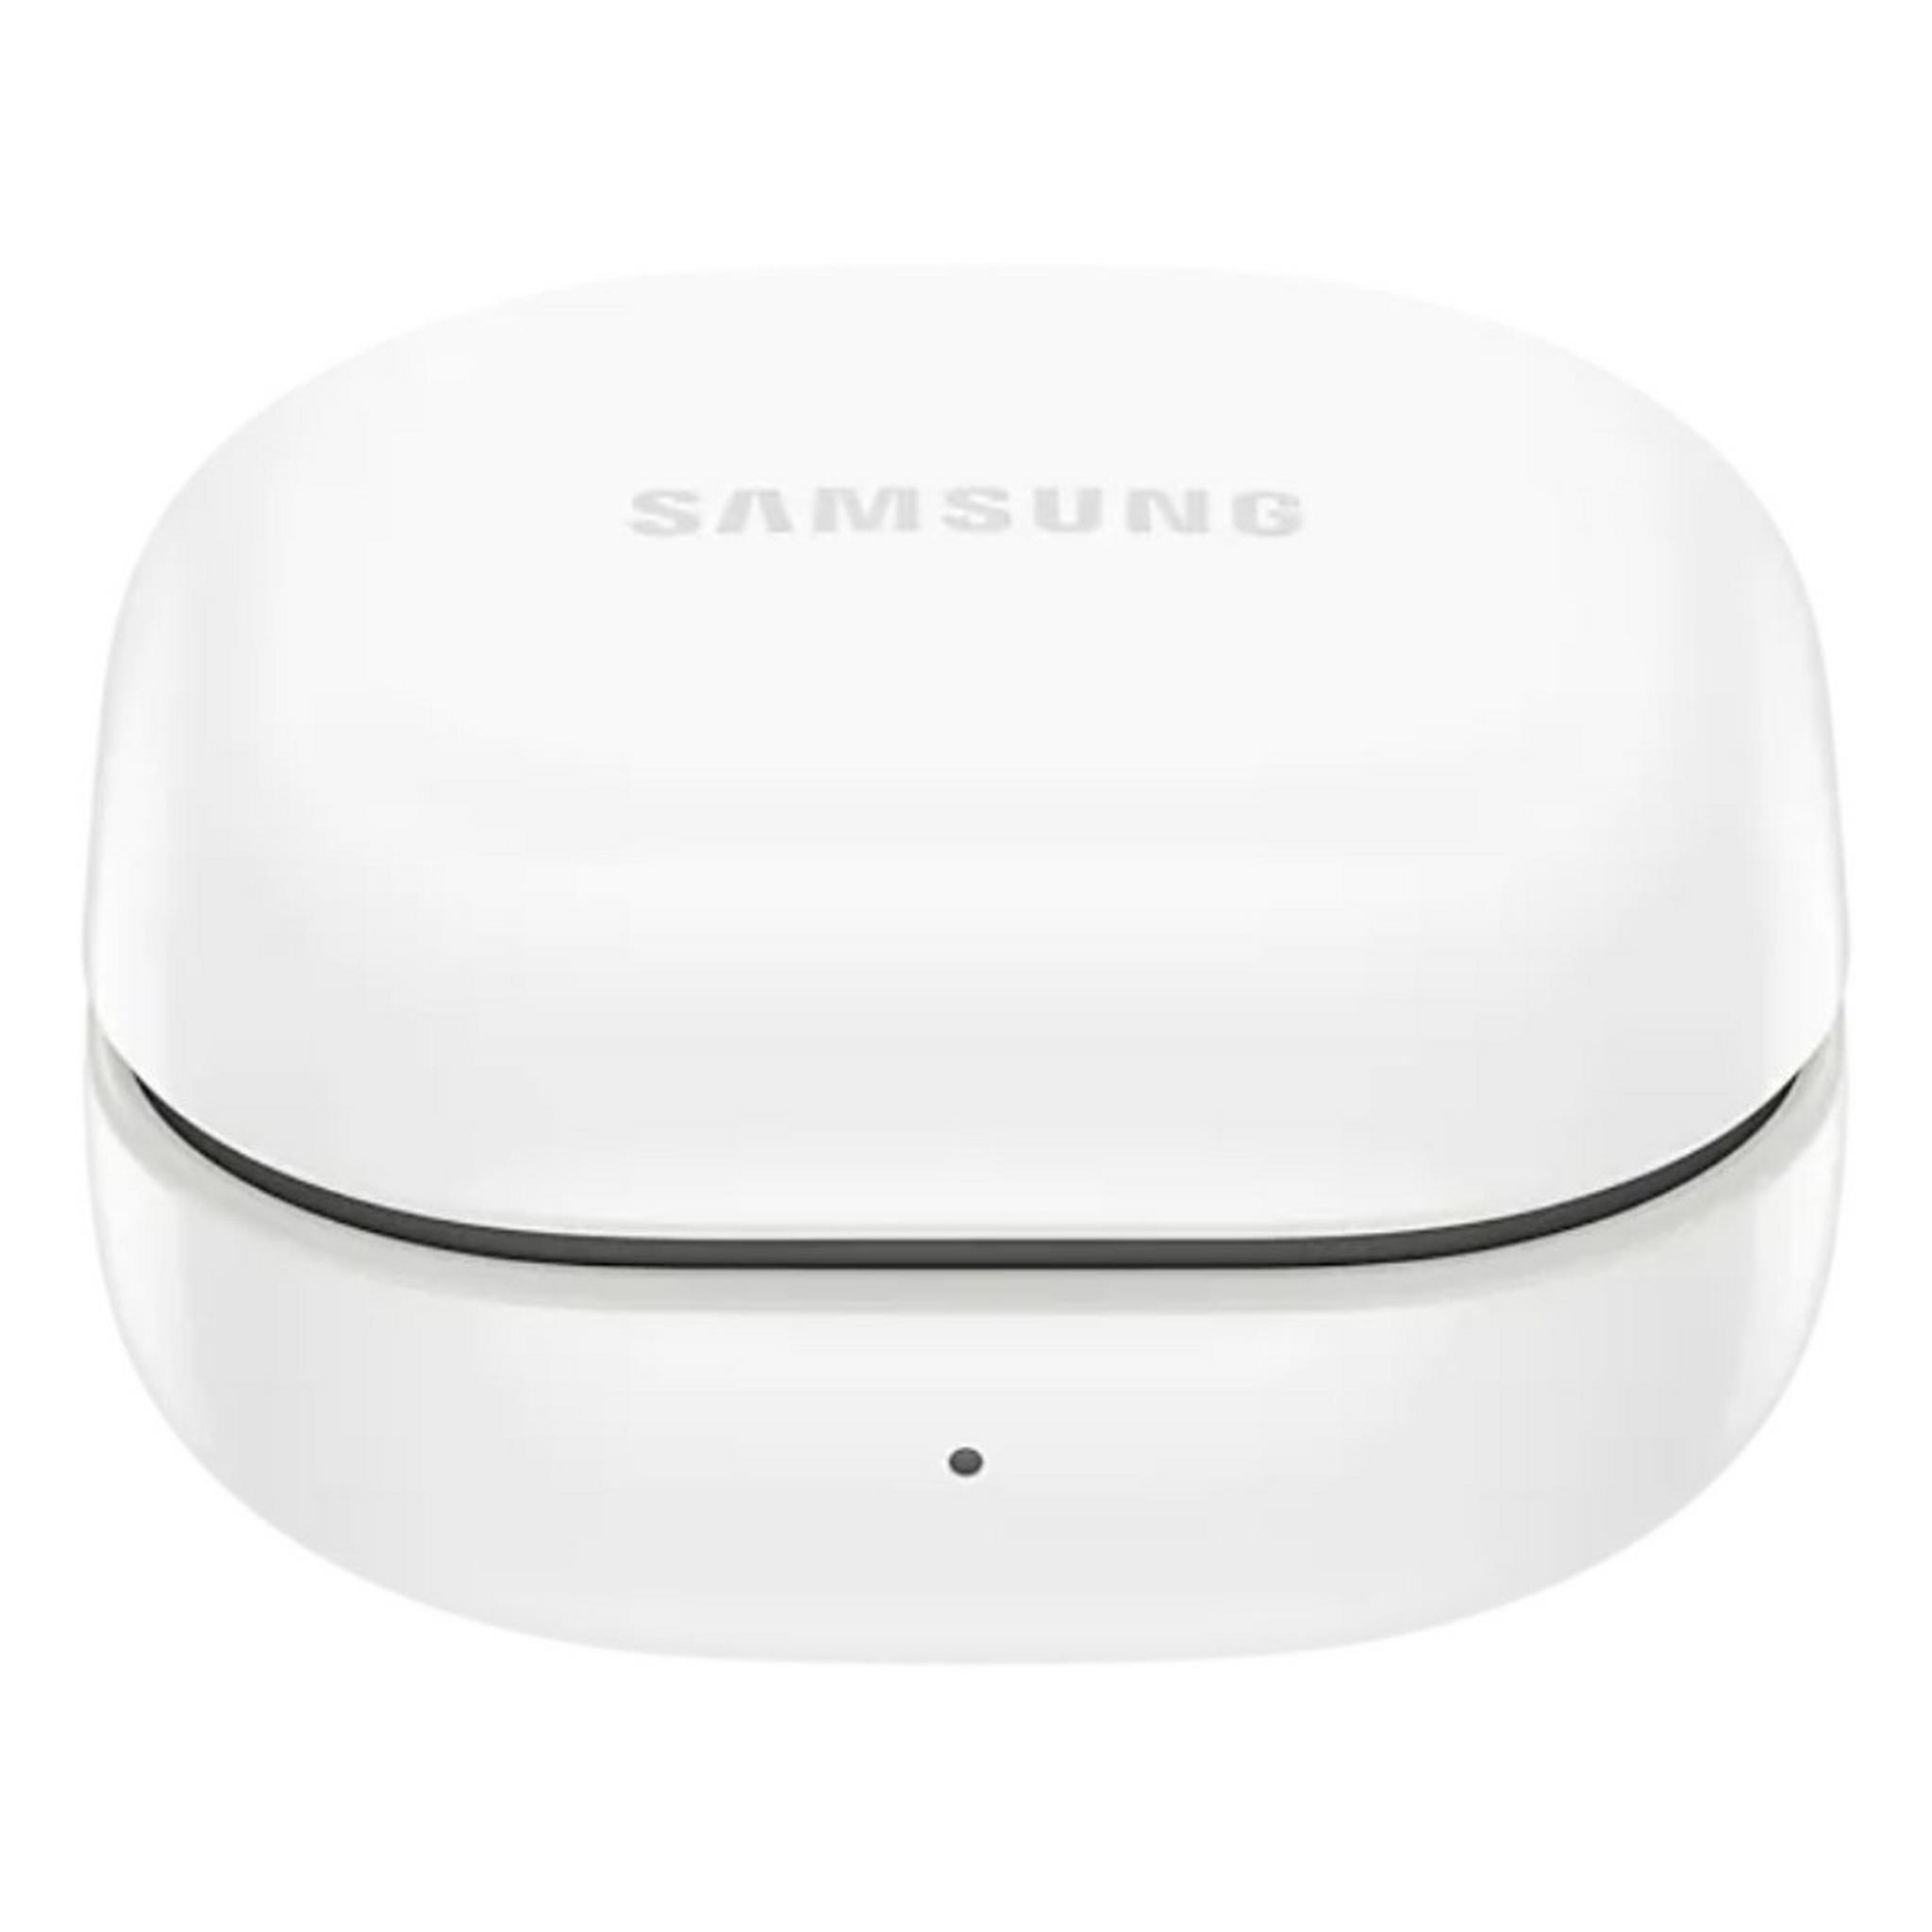 Samsung Galaxy Buds 2 - Graphite